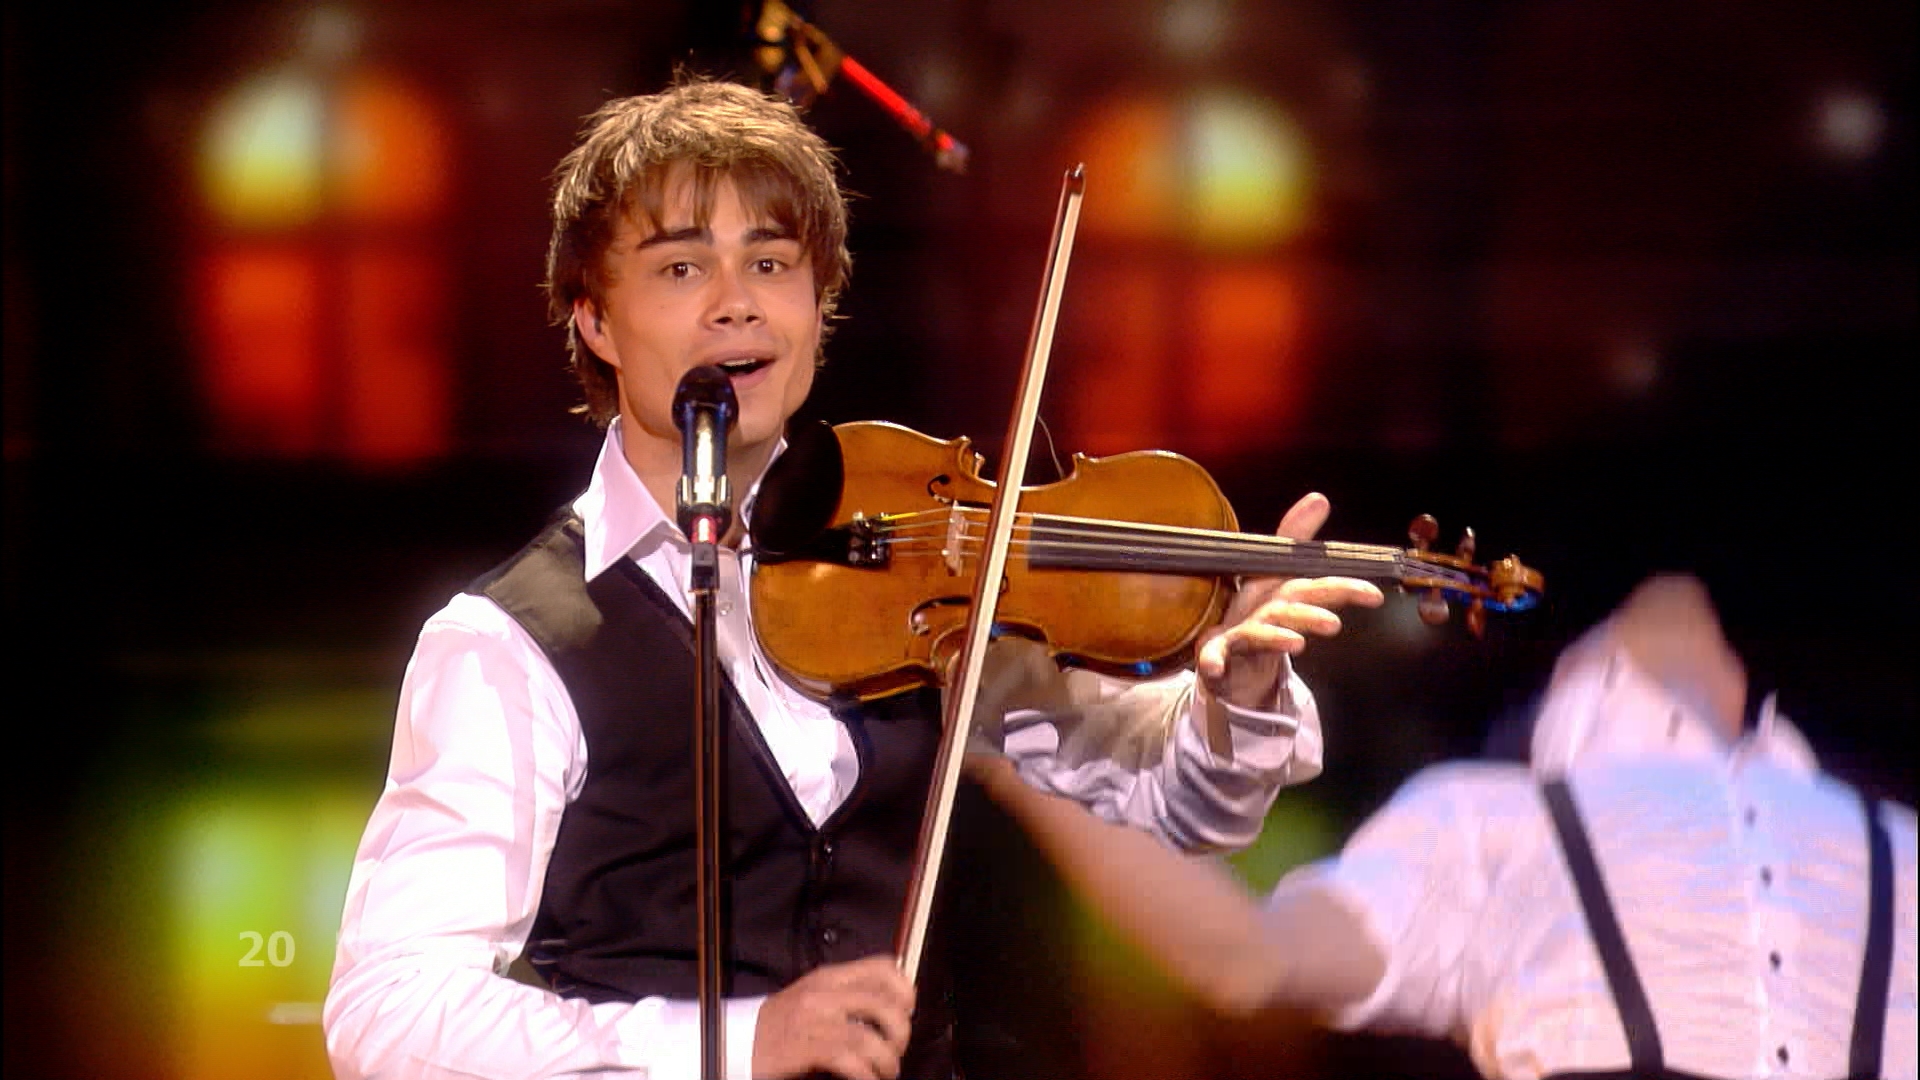 True HD > Alexander Rybak [Live Eurovision 2009 Final]